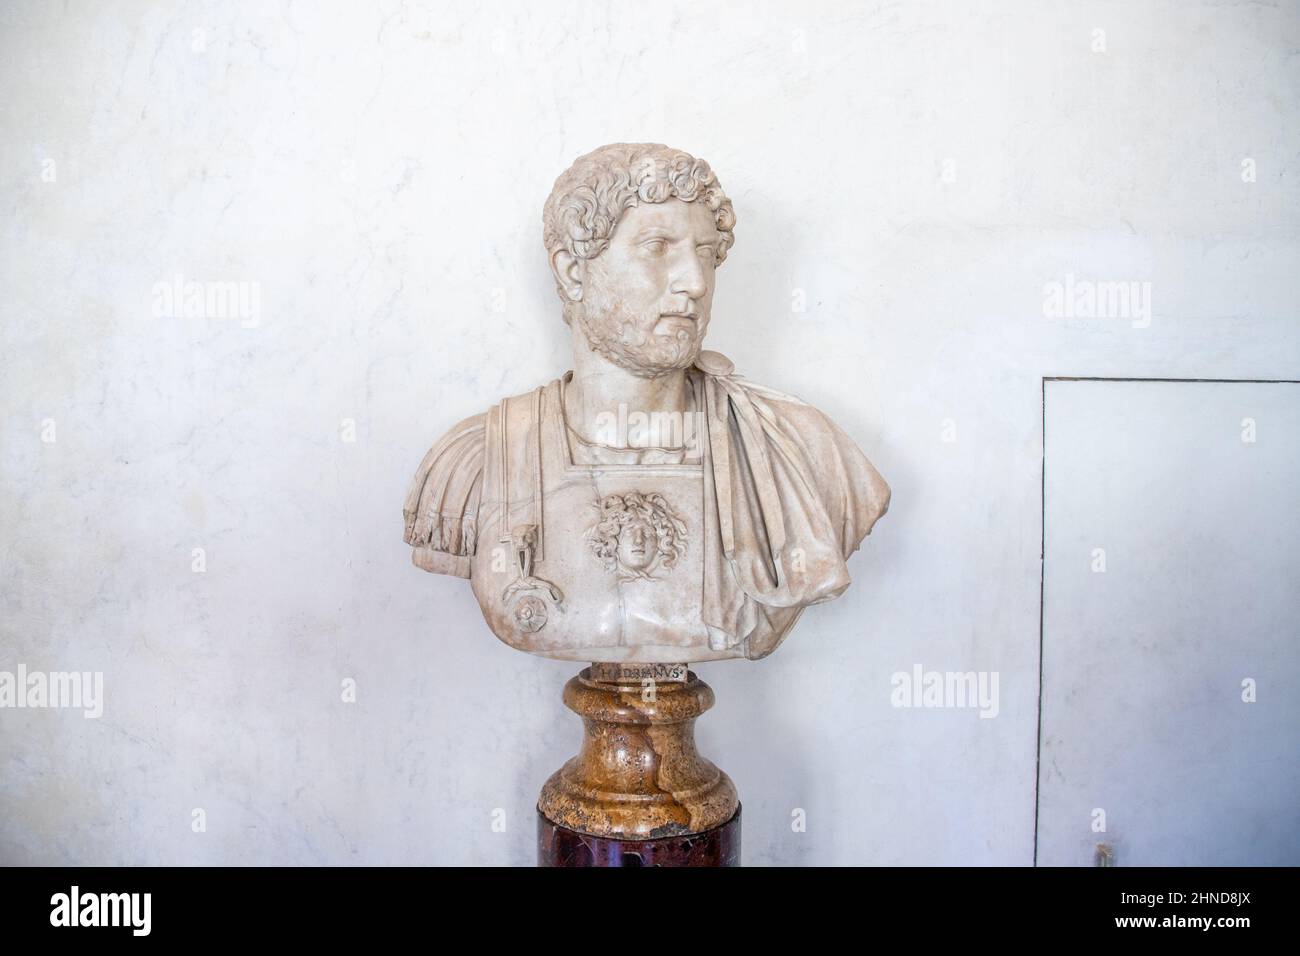 Buste de l'empereur romain Hadrien, Galerie des Offices, Florence, Italie Banque D'Images